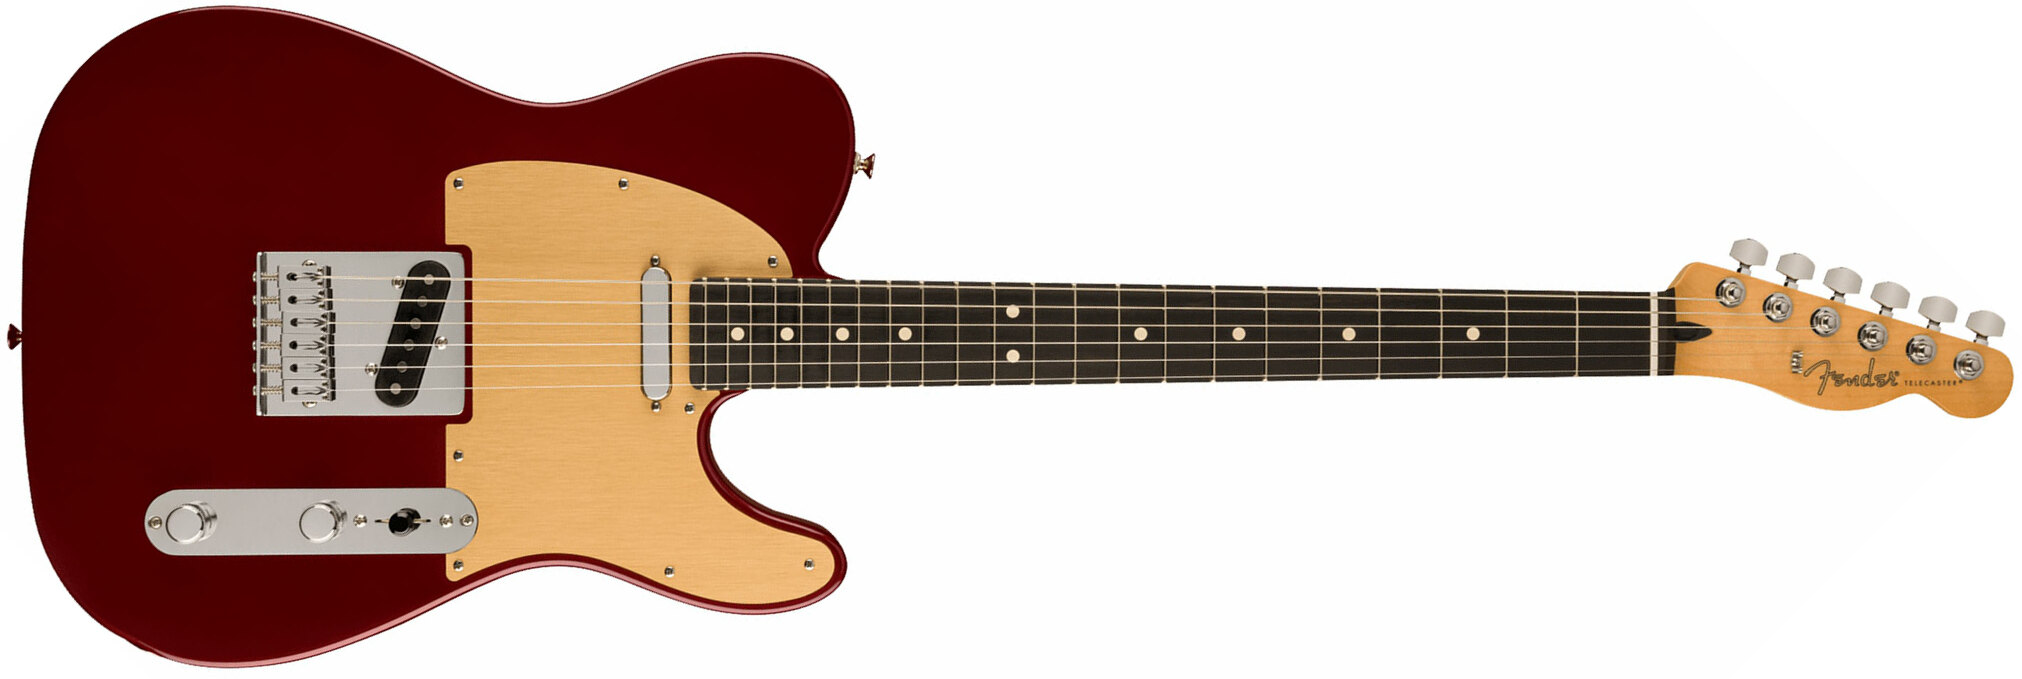 Fender Tele Player Ltd Mex 2s Pure Vintage Ht Eb - Oxblood - Guitarra eléctrica con forma de tel - Main picture